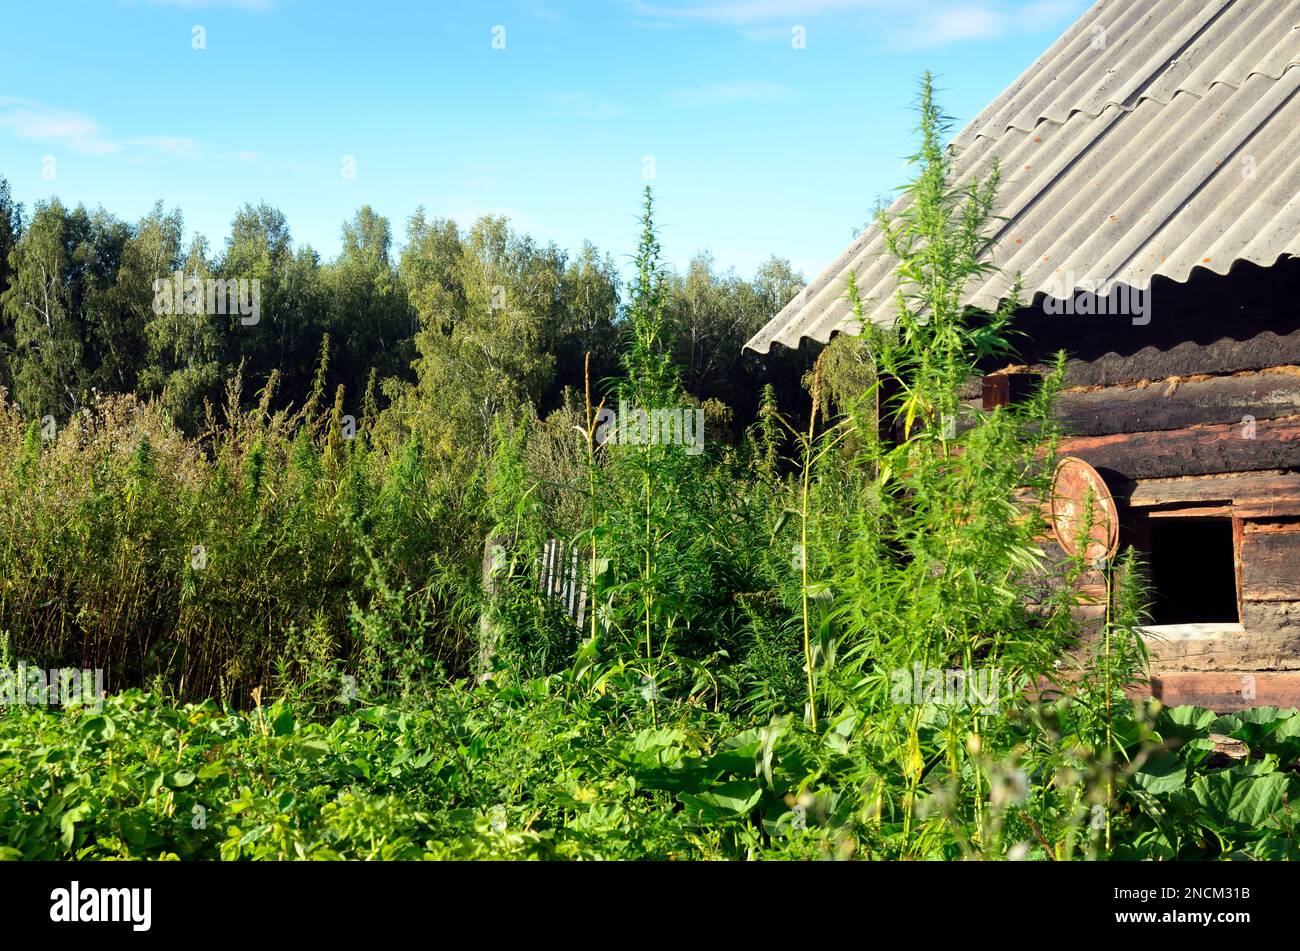 De grands buissons verts de cannabis sauvage Ruderalis dans le jardin du village de Sibérie russe poussent sur le fond de la grange en bois Banque D'Images